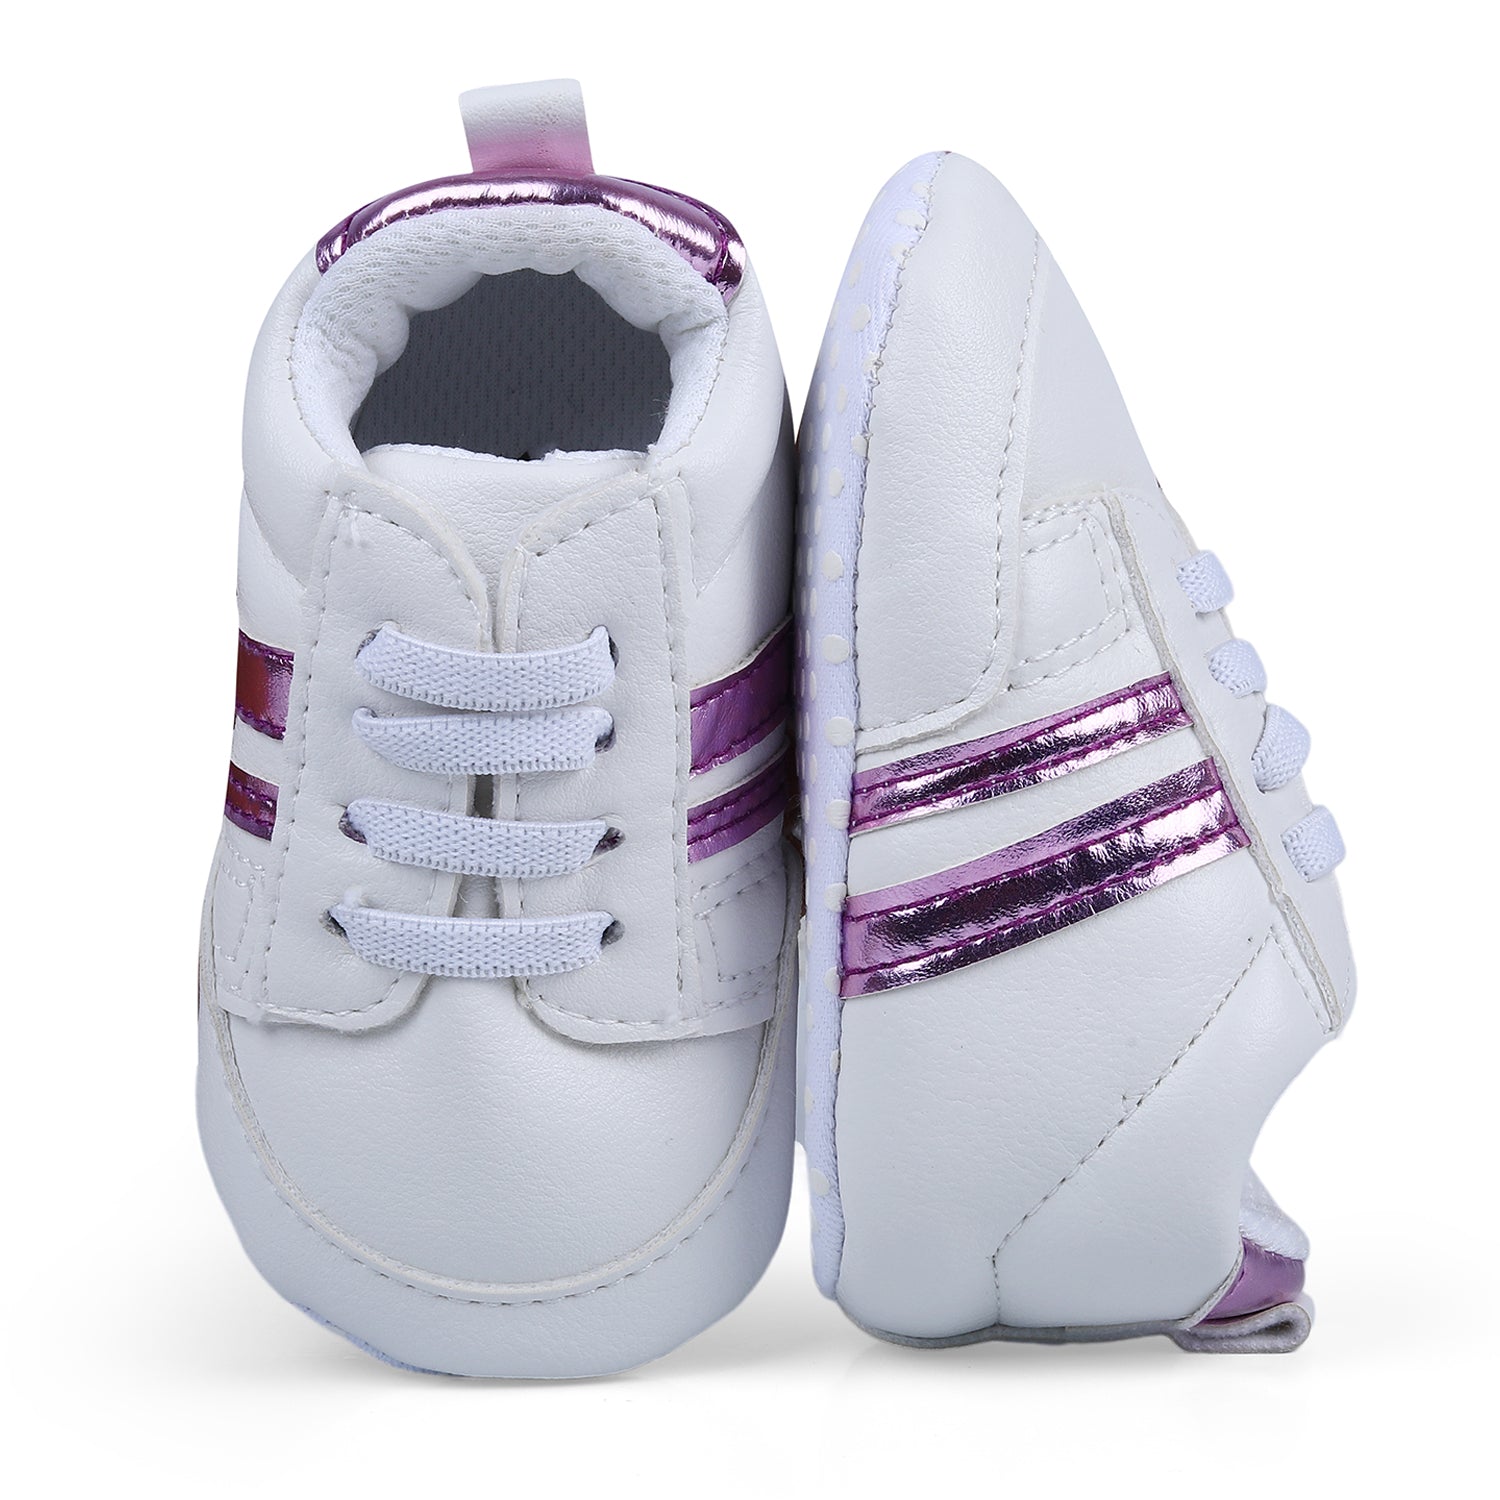 Metallic Stripes Fancy Anti-Slip Sneaker Shoes - White